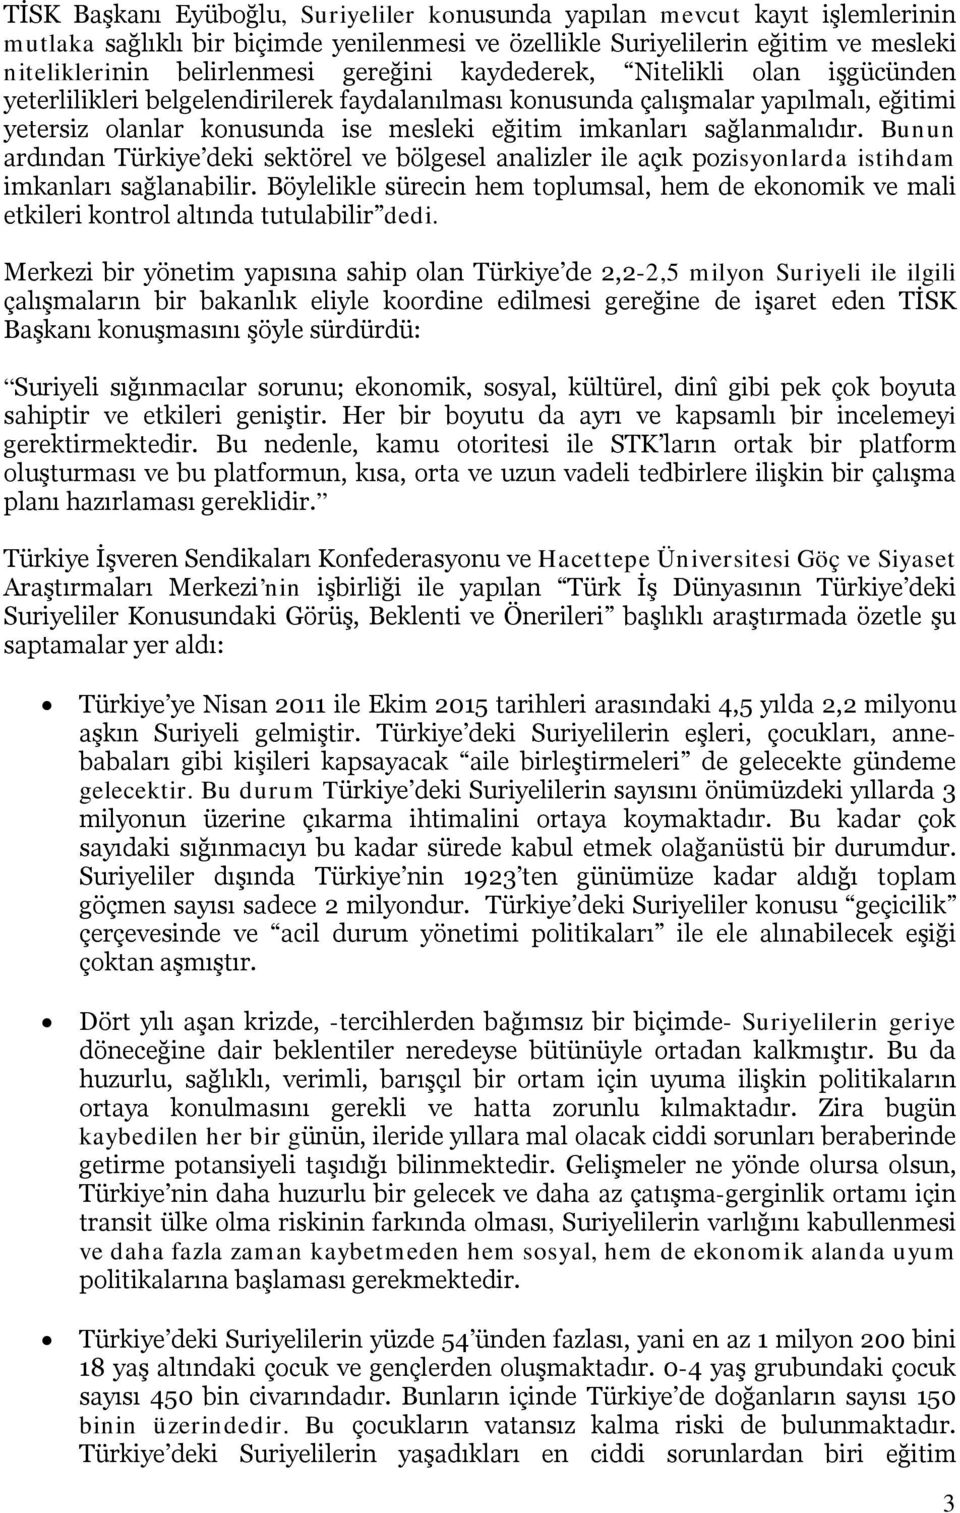 sağlanmalıdır. Bunun ardından Türkiye deki sektörel ve bölgesel analizler ile açık pozisyonlarda istihdam imkanları sağlanabilir.